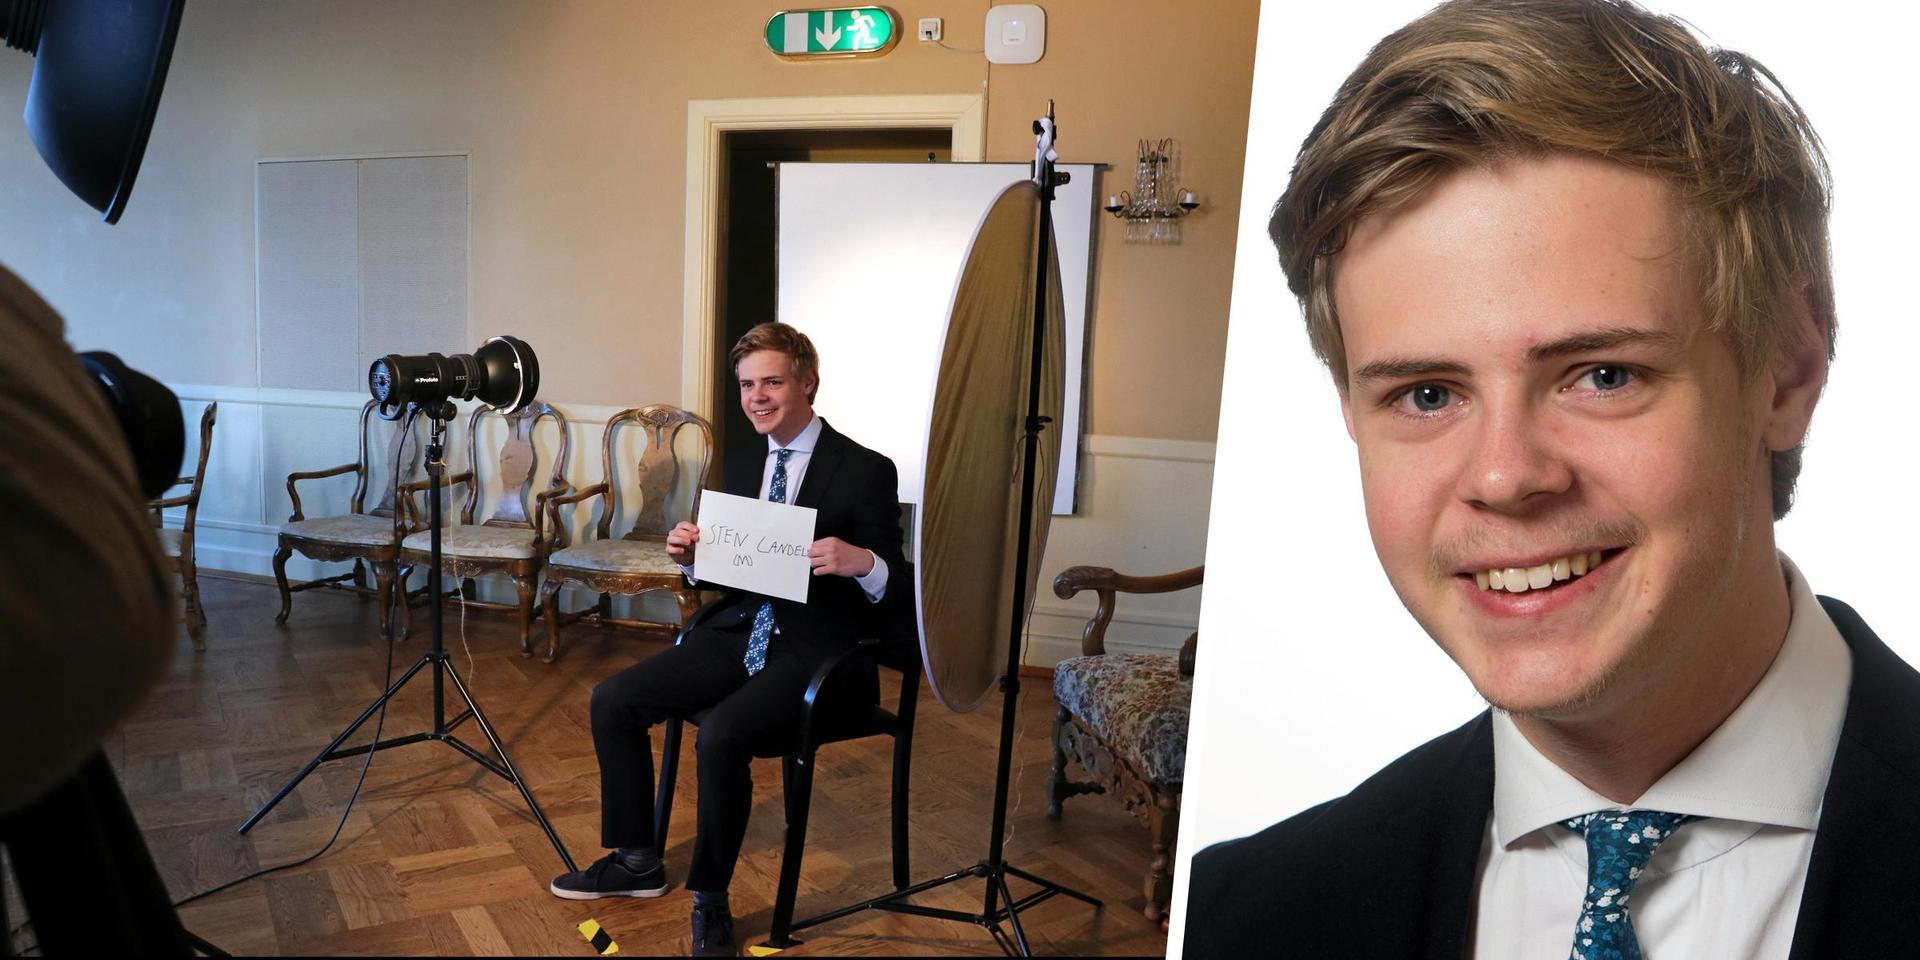 20 år gammal fotograferades Sten Candell i samband med att han tog plats som ledamot i Laholms kommunfullmäktige i oktober 2018.